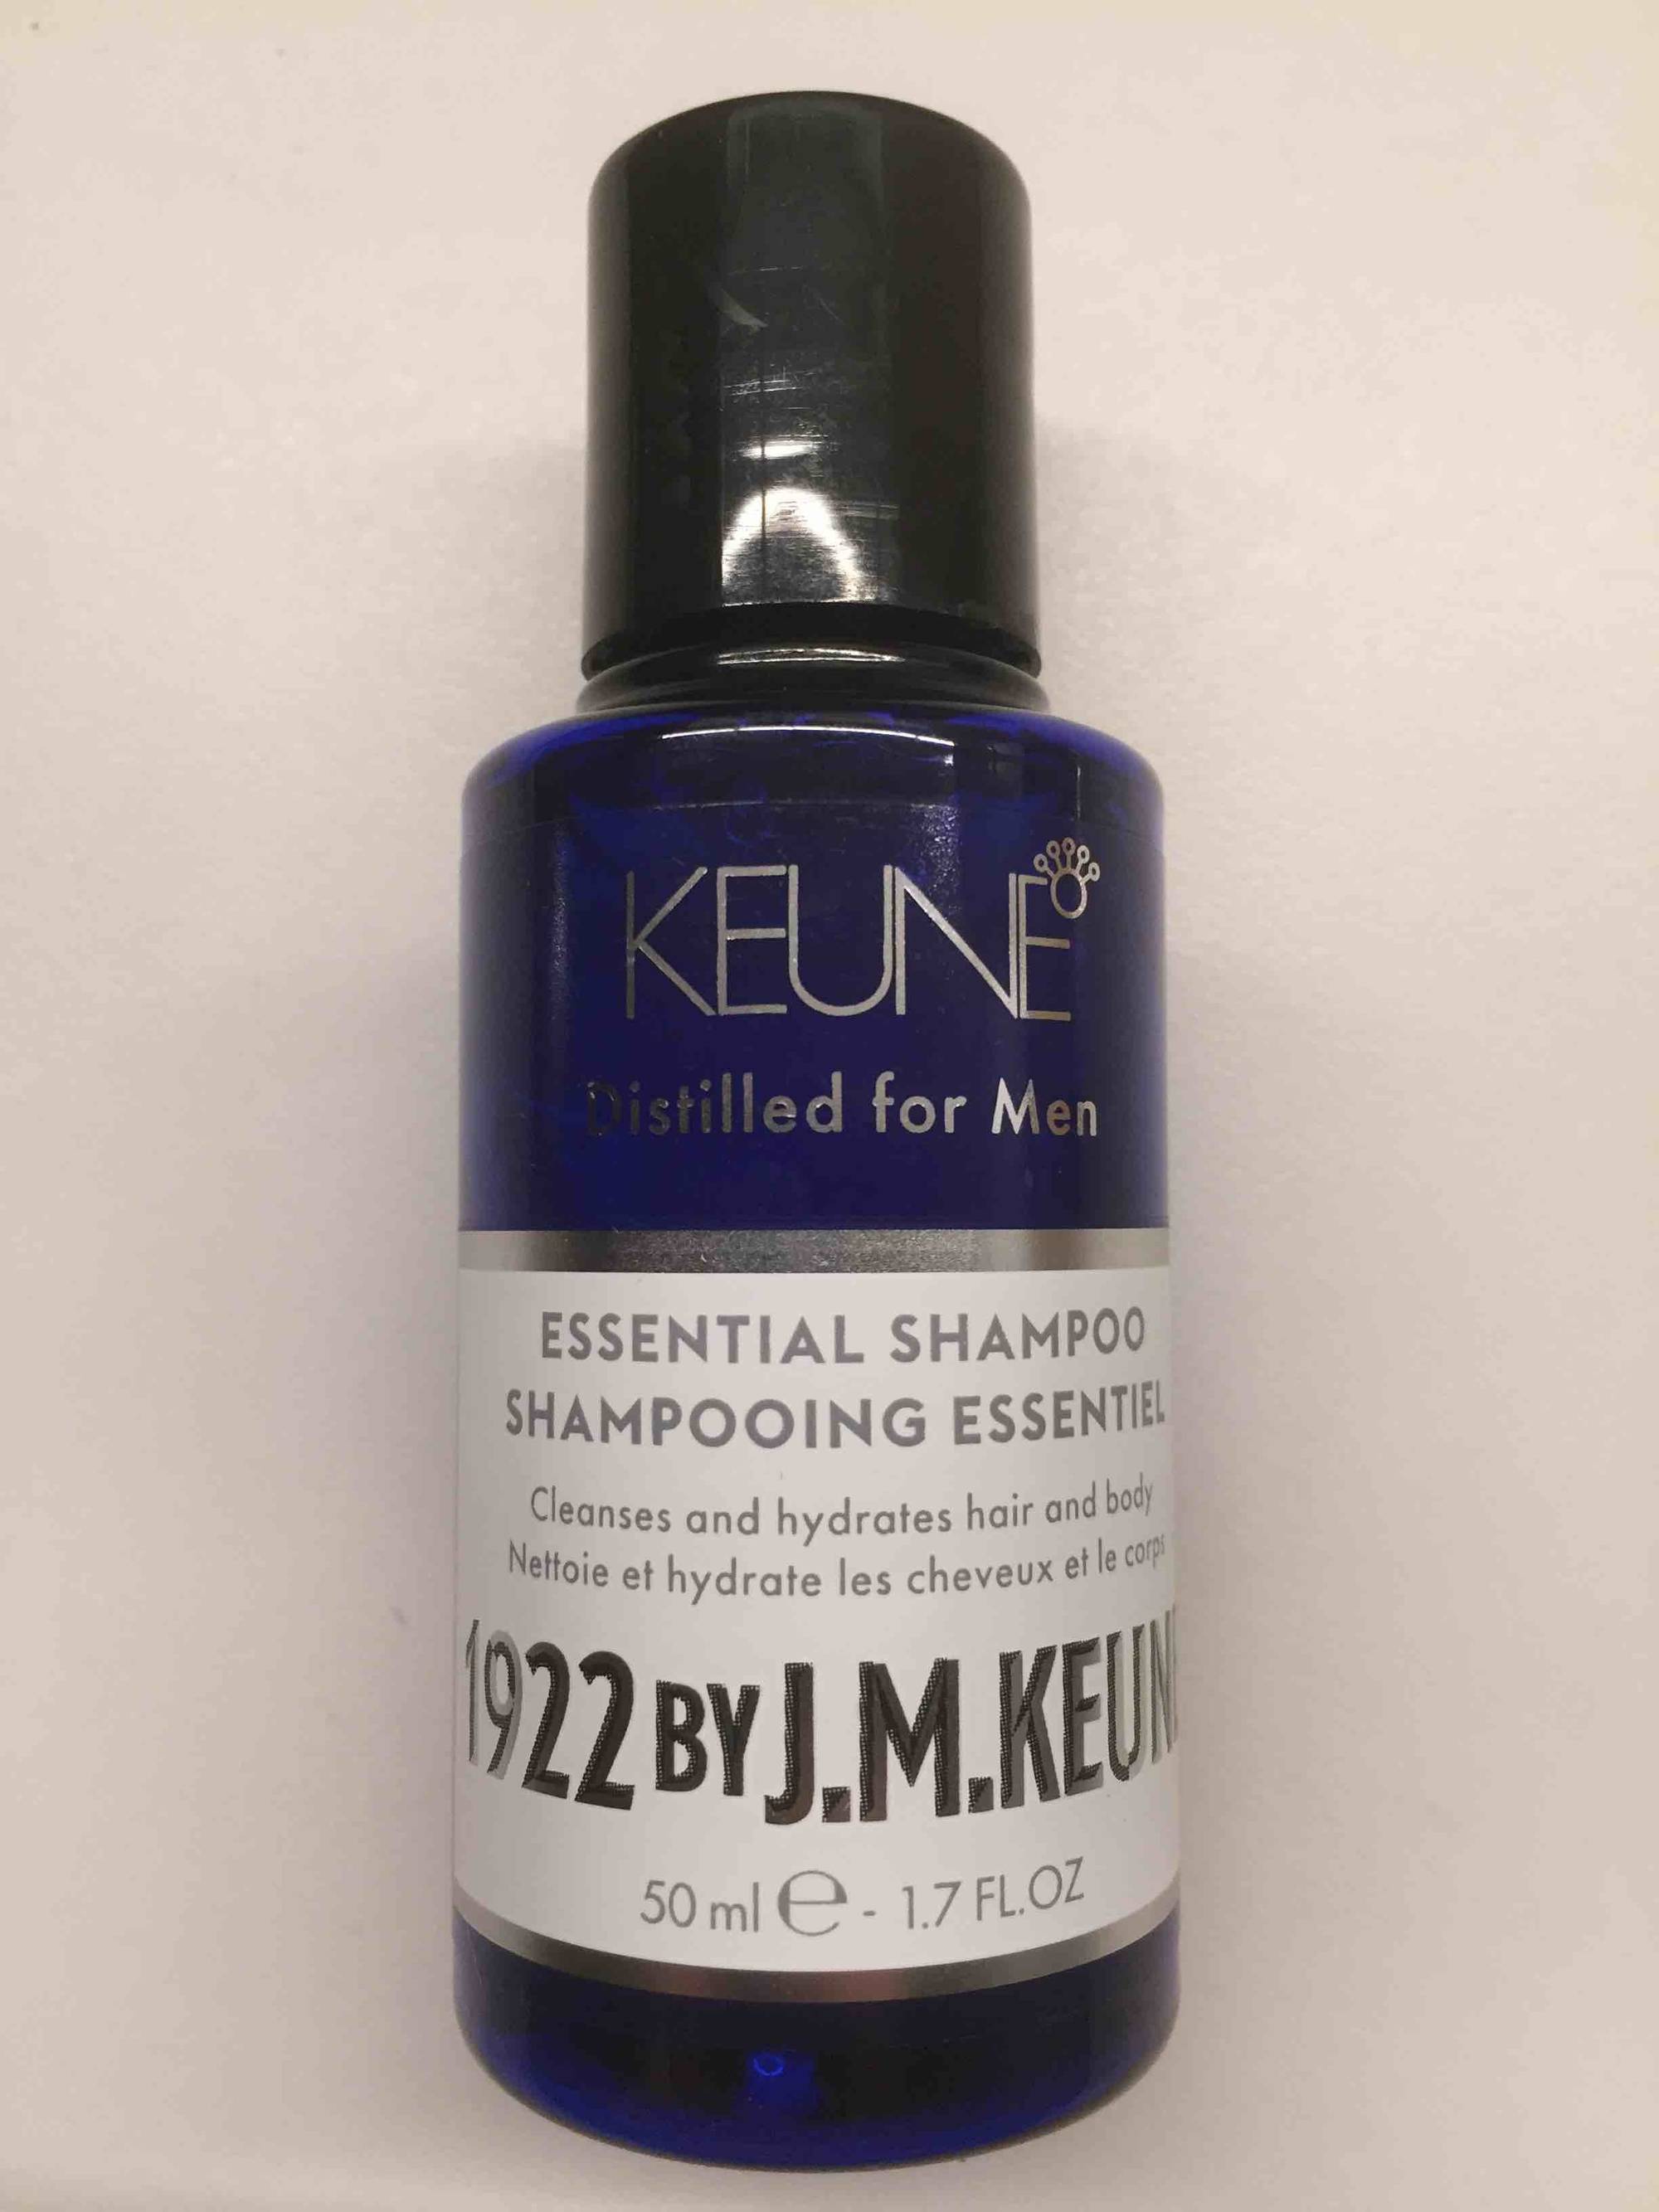 KEUNE - Distilled for men - Shampooing essentiel